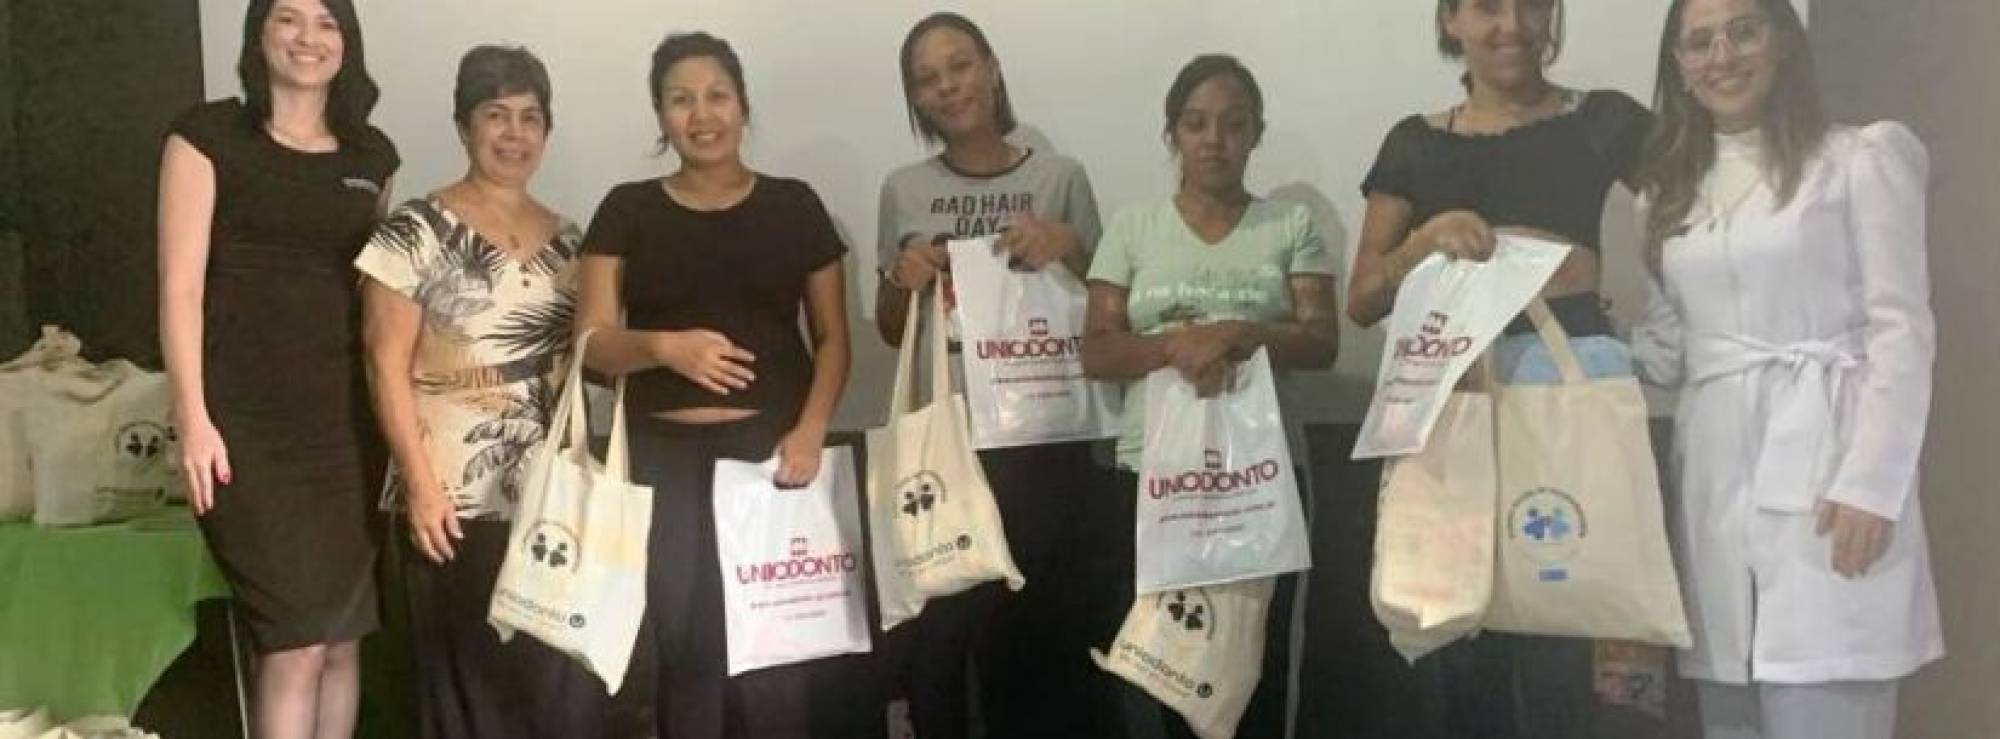 Uniodonto de São José dos Campos apoia projeto “Acolher”, voltado às gestantes em situação de vulnerabilidade social